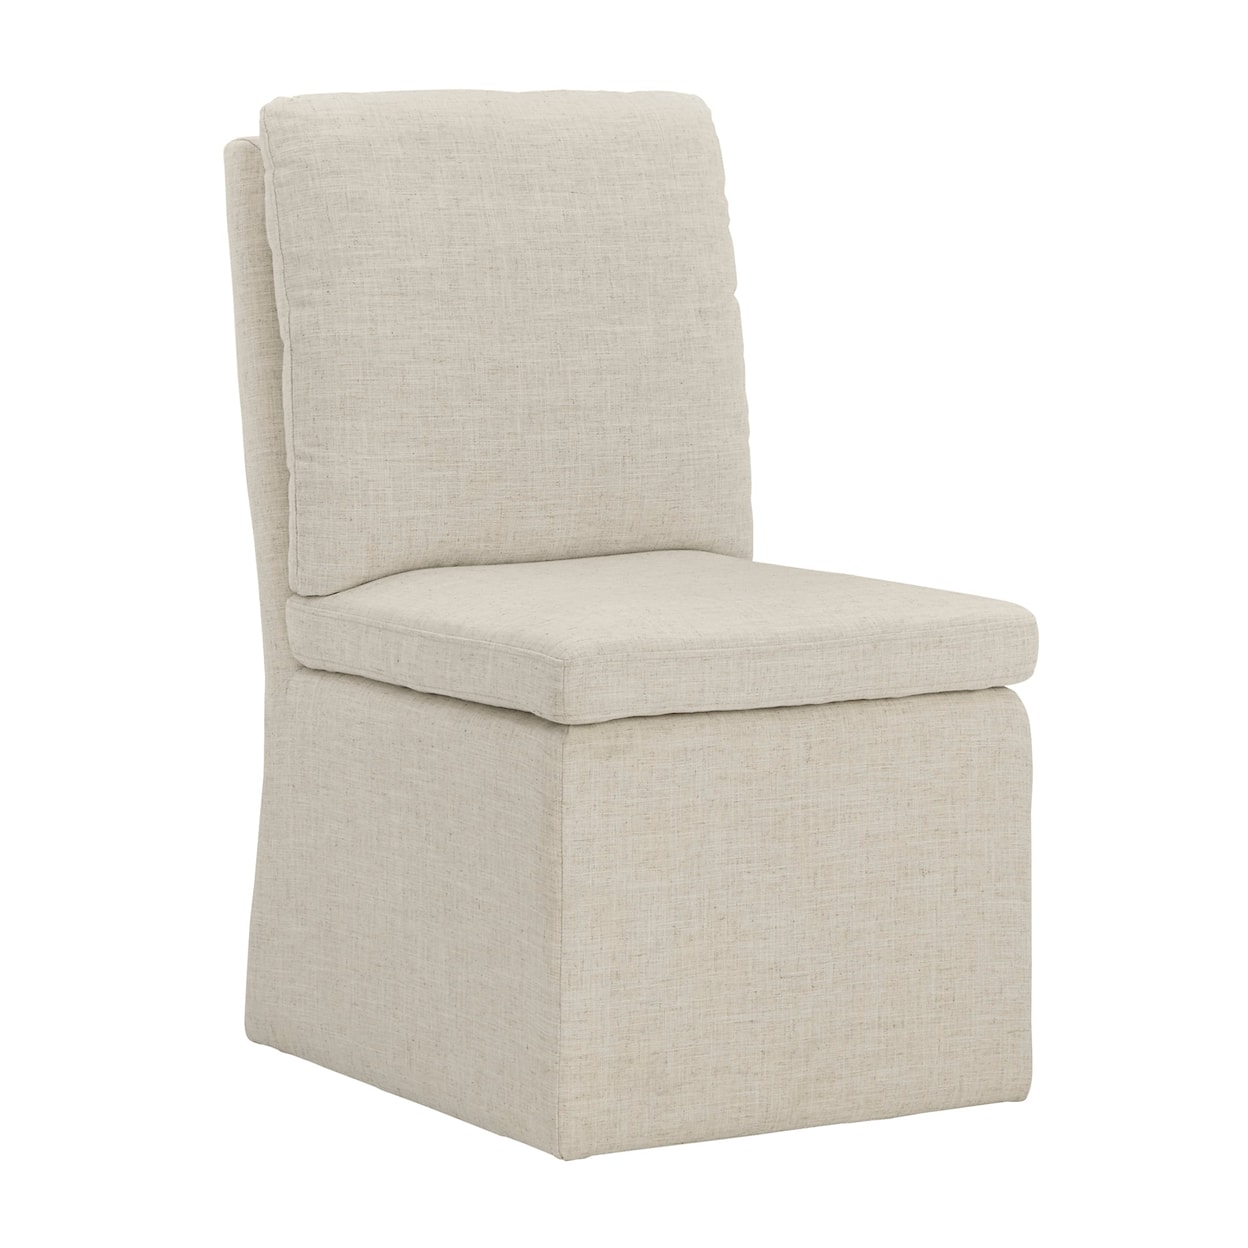 Ashley Furniture - Millennium Krystanza Dining Chair